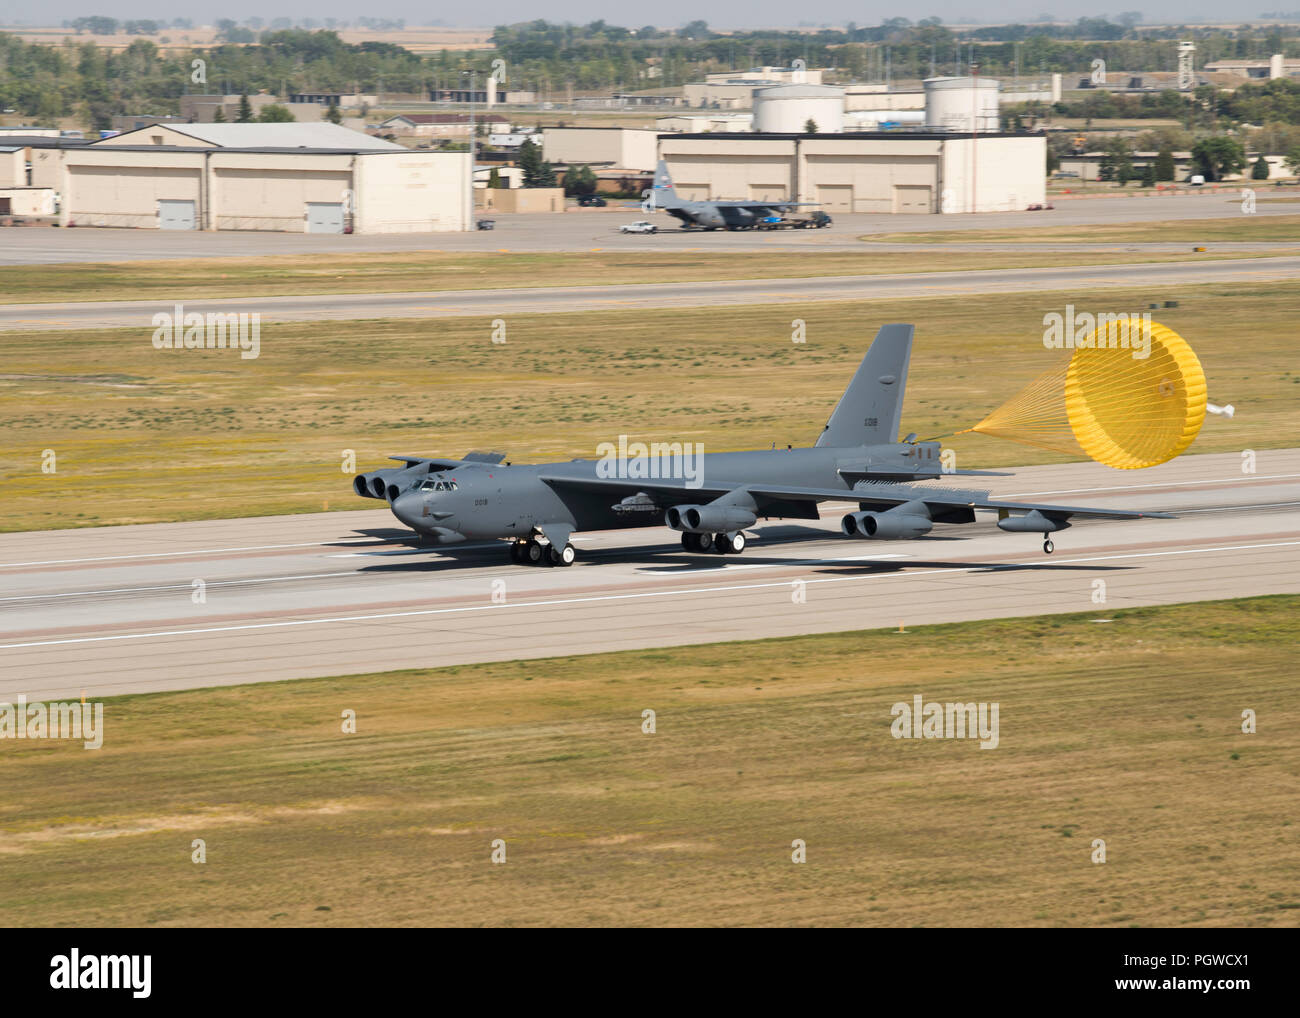 Un B-52H Stratofortress aterriza en la base de la Fuerza Aérea Minot, Dakota del Norte, el 21 de agosto, 2018. Antes de un B-52 puede aterrizar, el piloto debe estar en contacto con la Torre de Control del Tráfico Aéreo para asegurar la línea de vuelo es clara y segura a la tierra. (Ee.Uu. Foto de la fuerza aérea por Aerotécnico de Primera Clase Alyssa M. Akers) Foto de stock